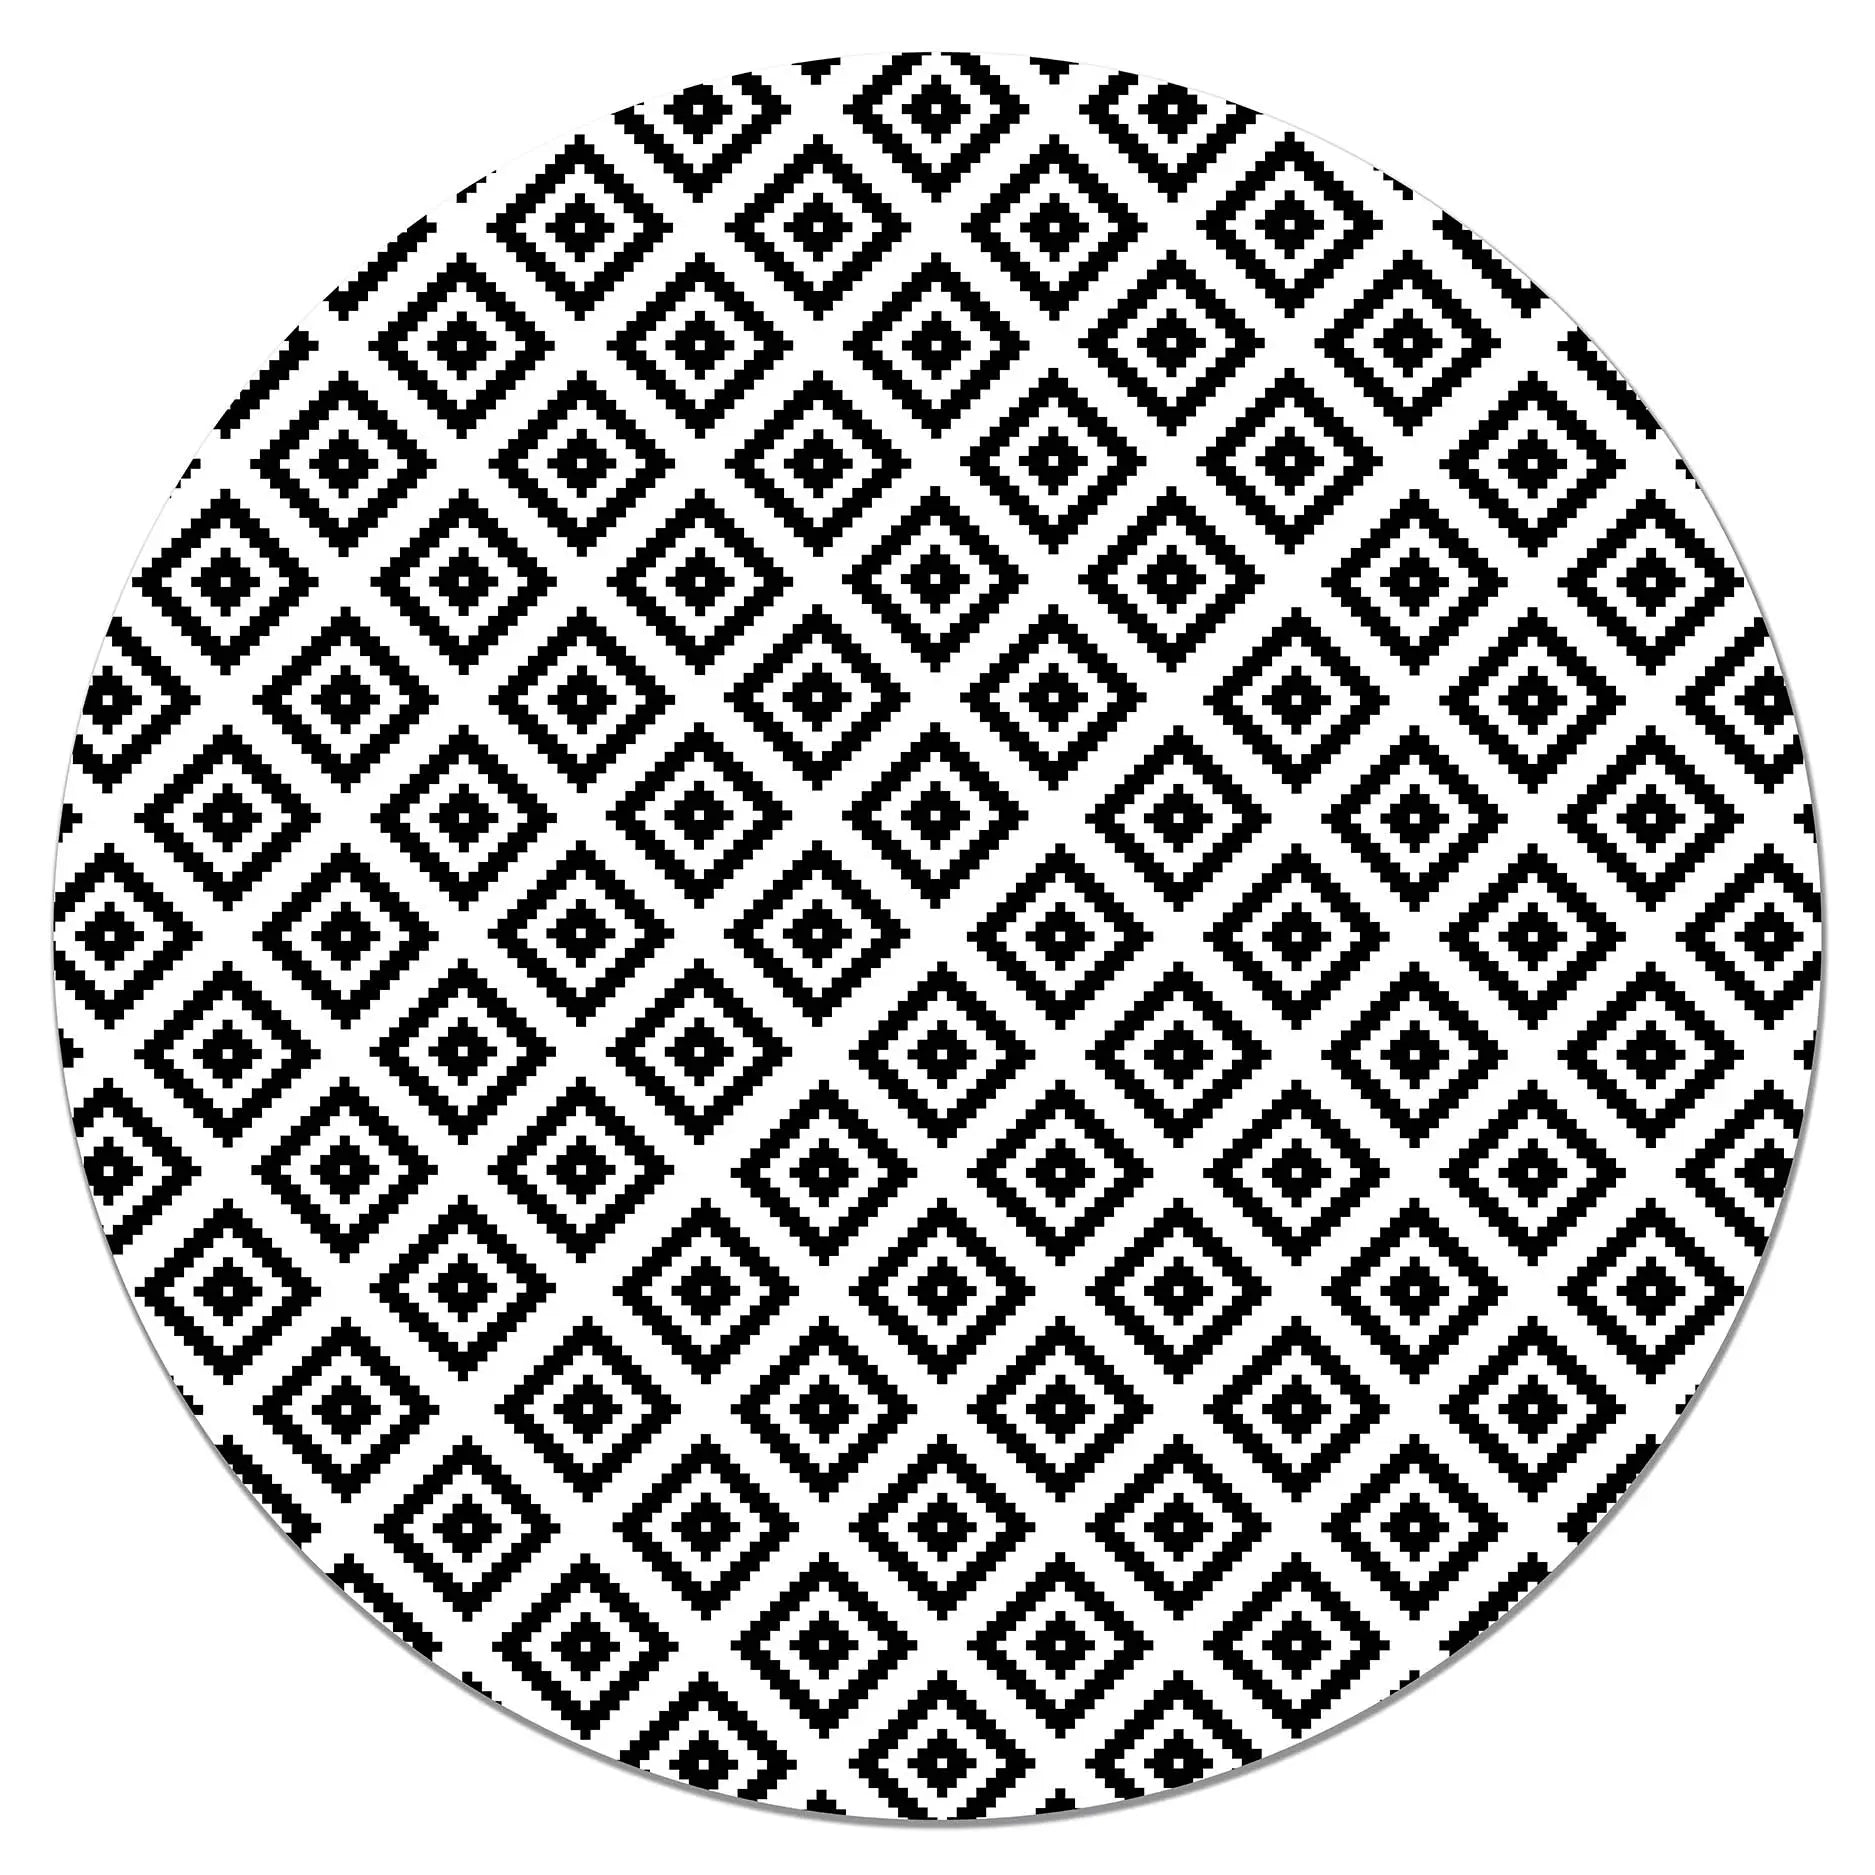  Alfombra negra abstracta redonda, iconos dibujados a mano,  contemporánea, moderna, antideslizante, para sala de estar, habitación de  los niños, decoración interior/exterior, alfombra de suelo, 63 pulgadas de  largo x 47 pulgadas